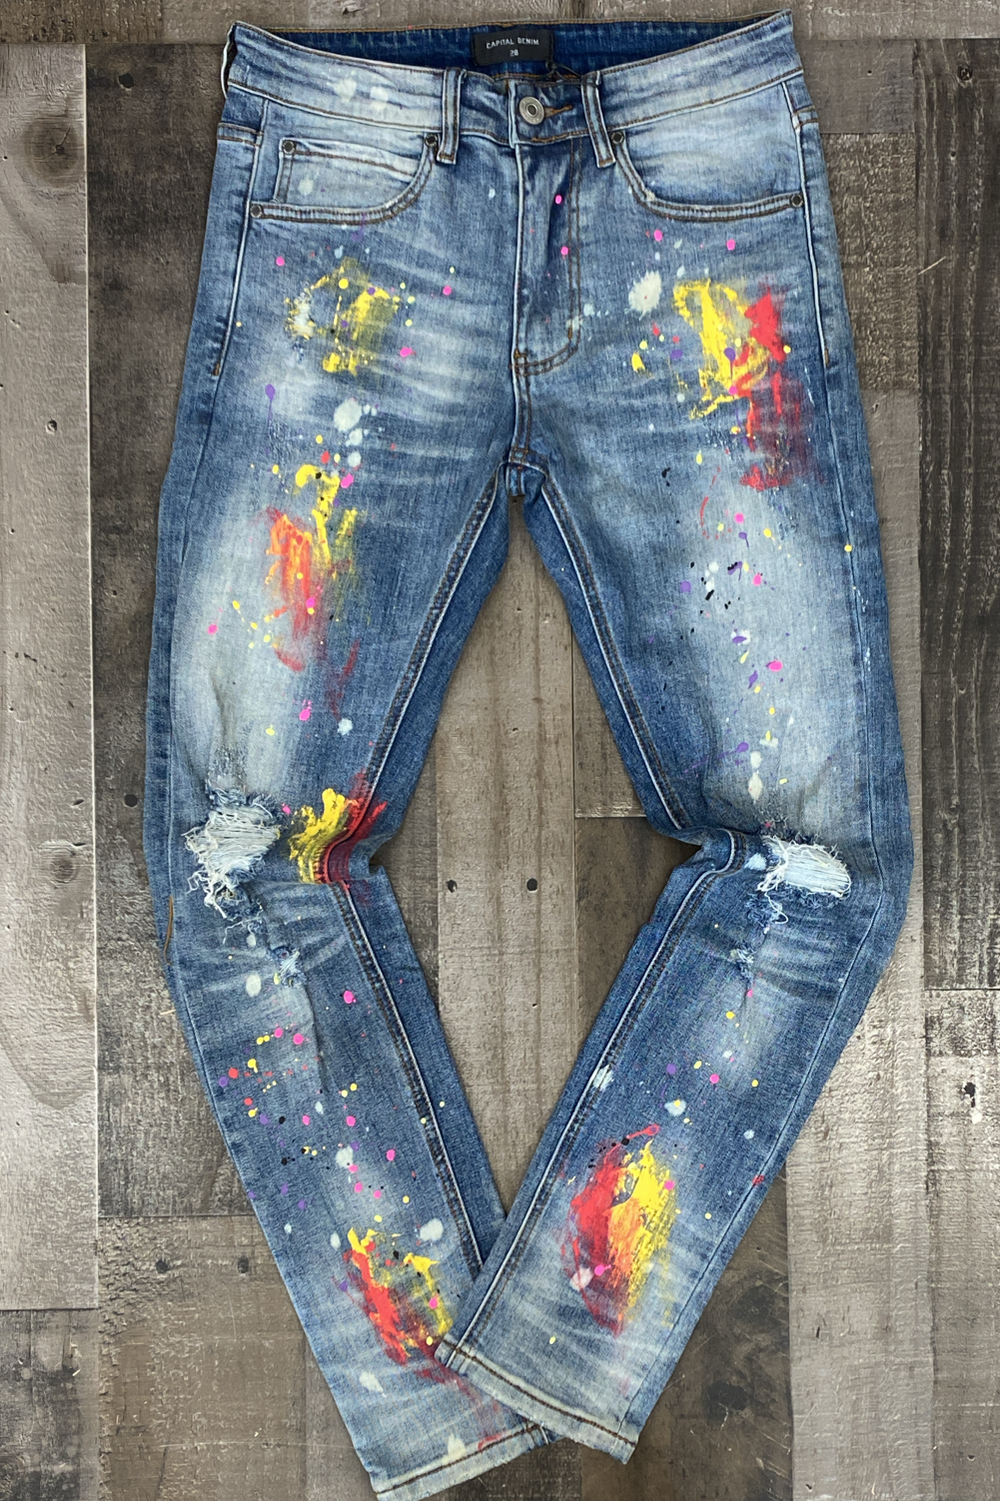 CPTL Denim- St. Charles denim jeans